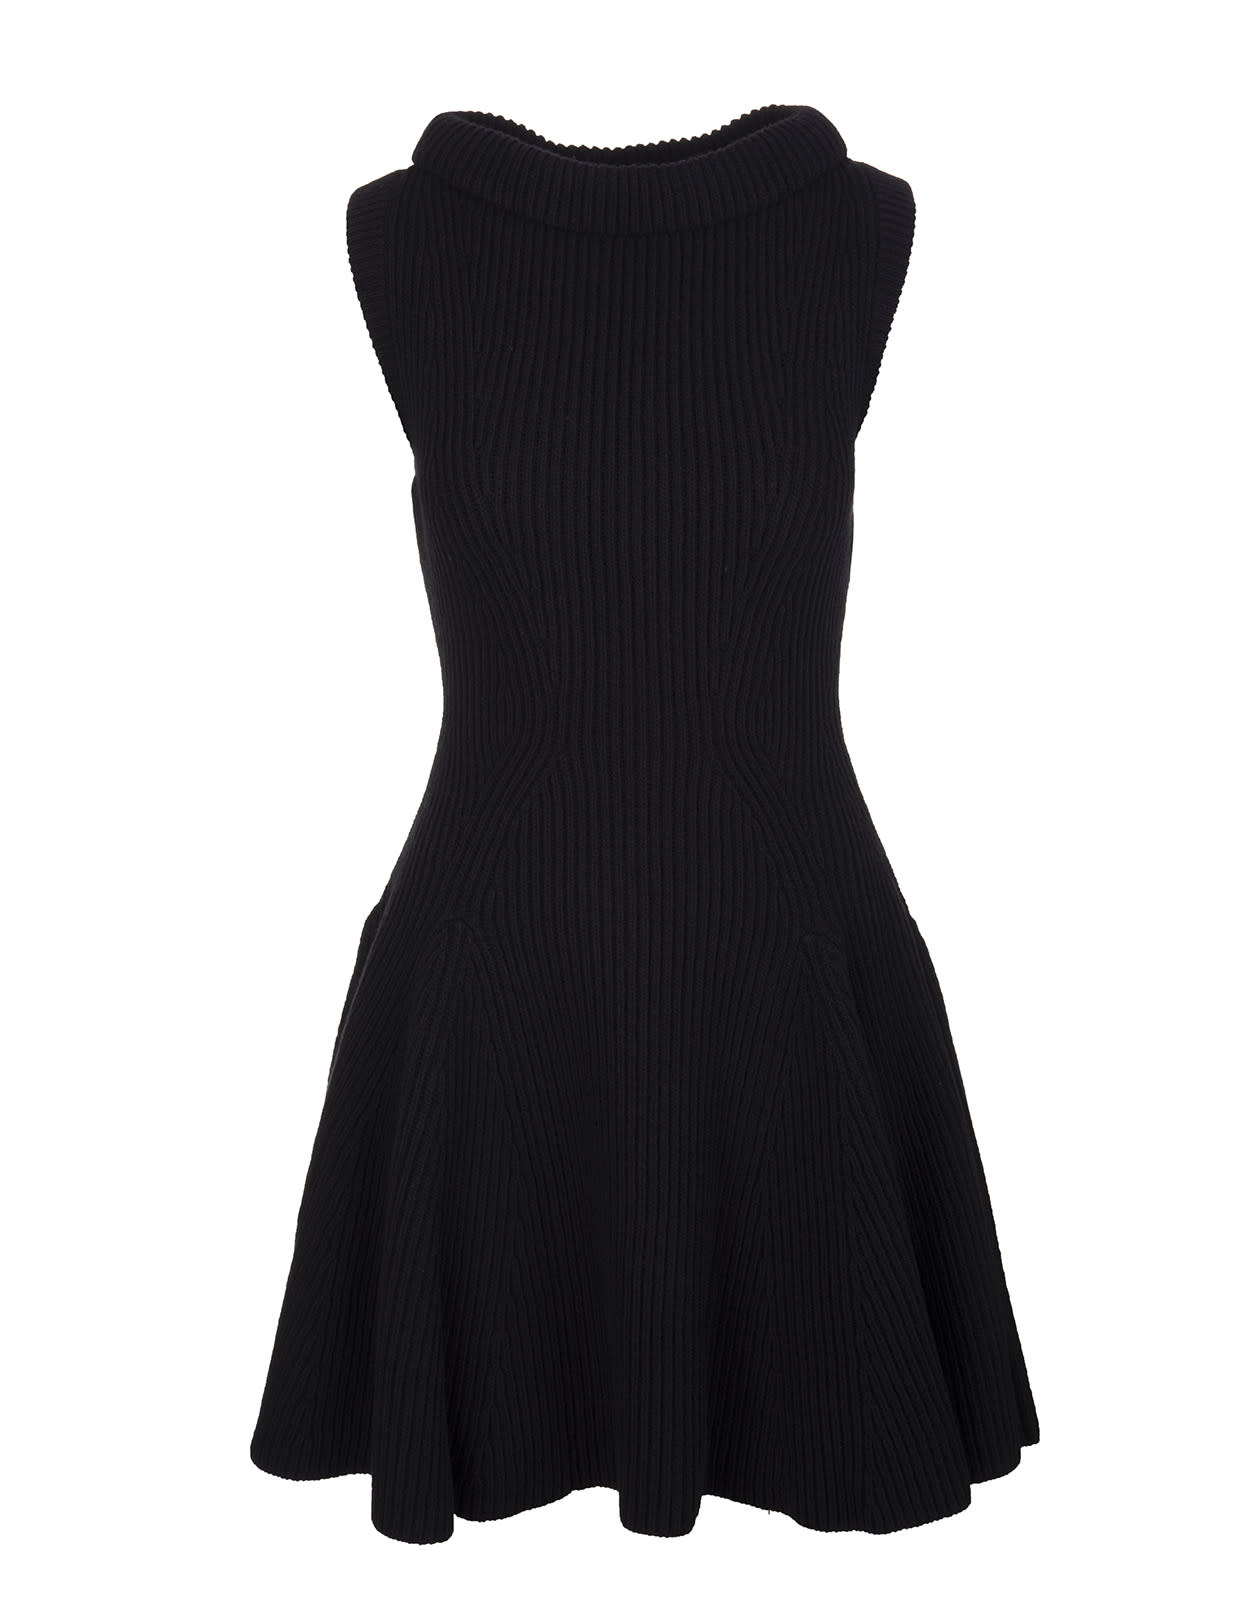 Alexander McQueen Black Short Dress In Ribbed Knit